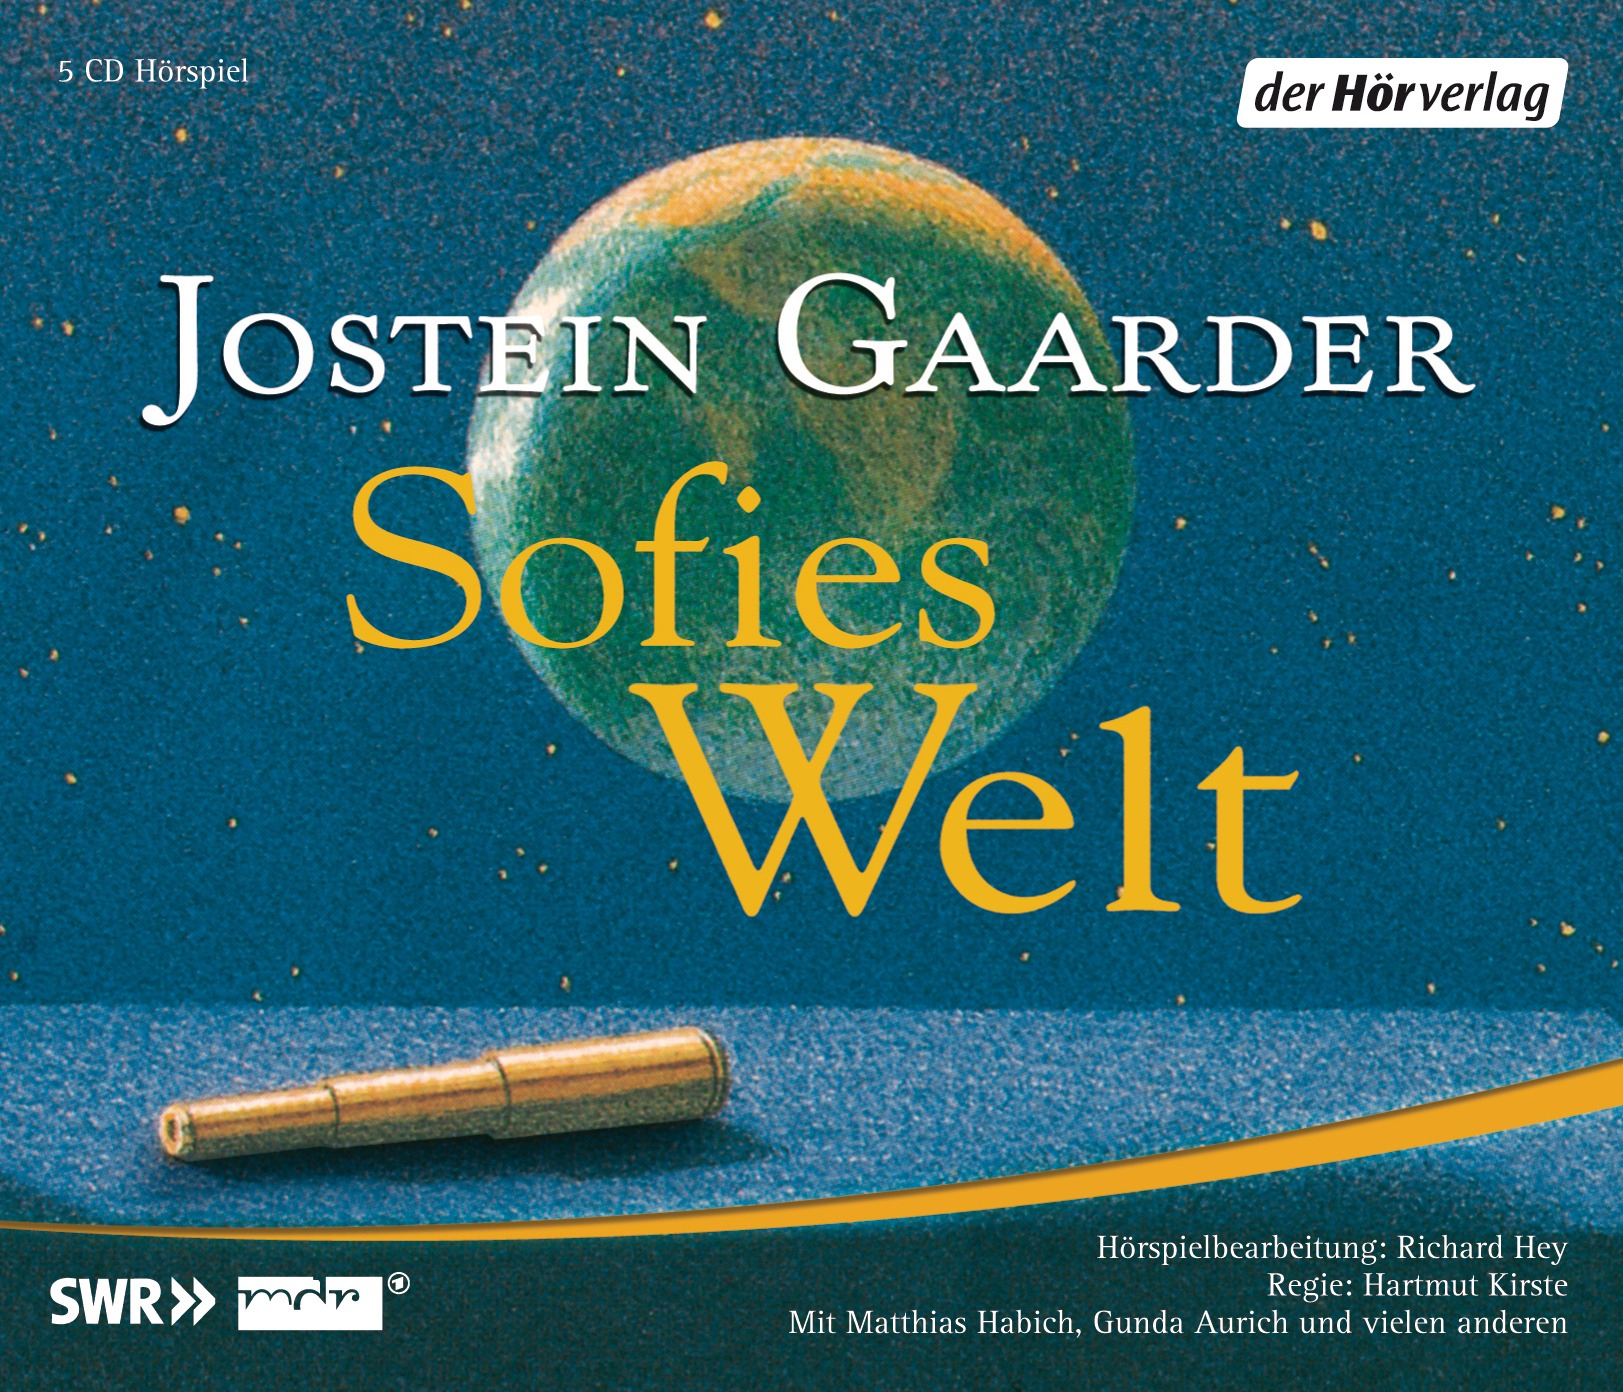 Hörspiel – Jostein Gaarder “Sofies Welt”